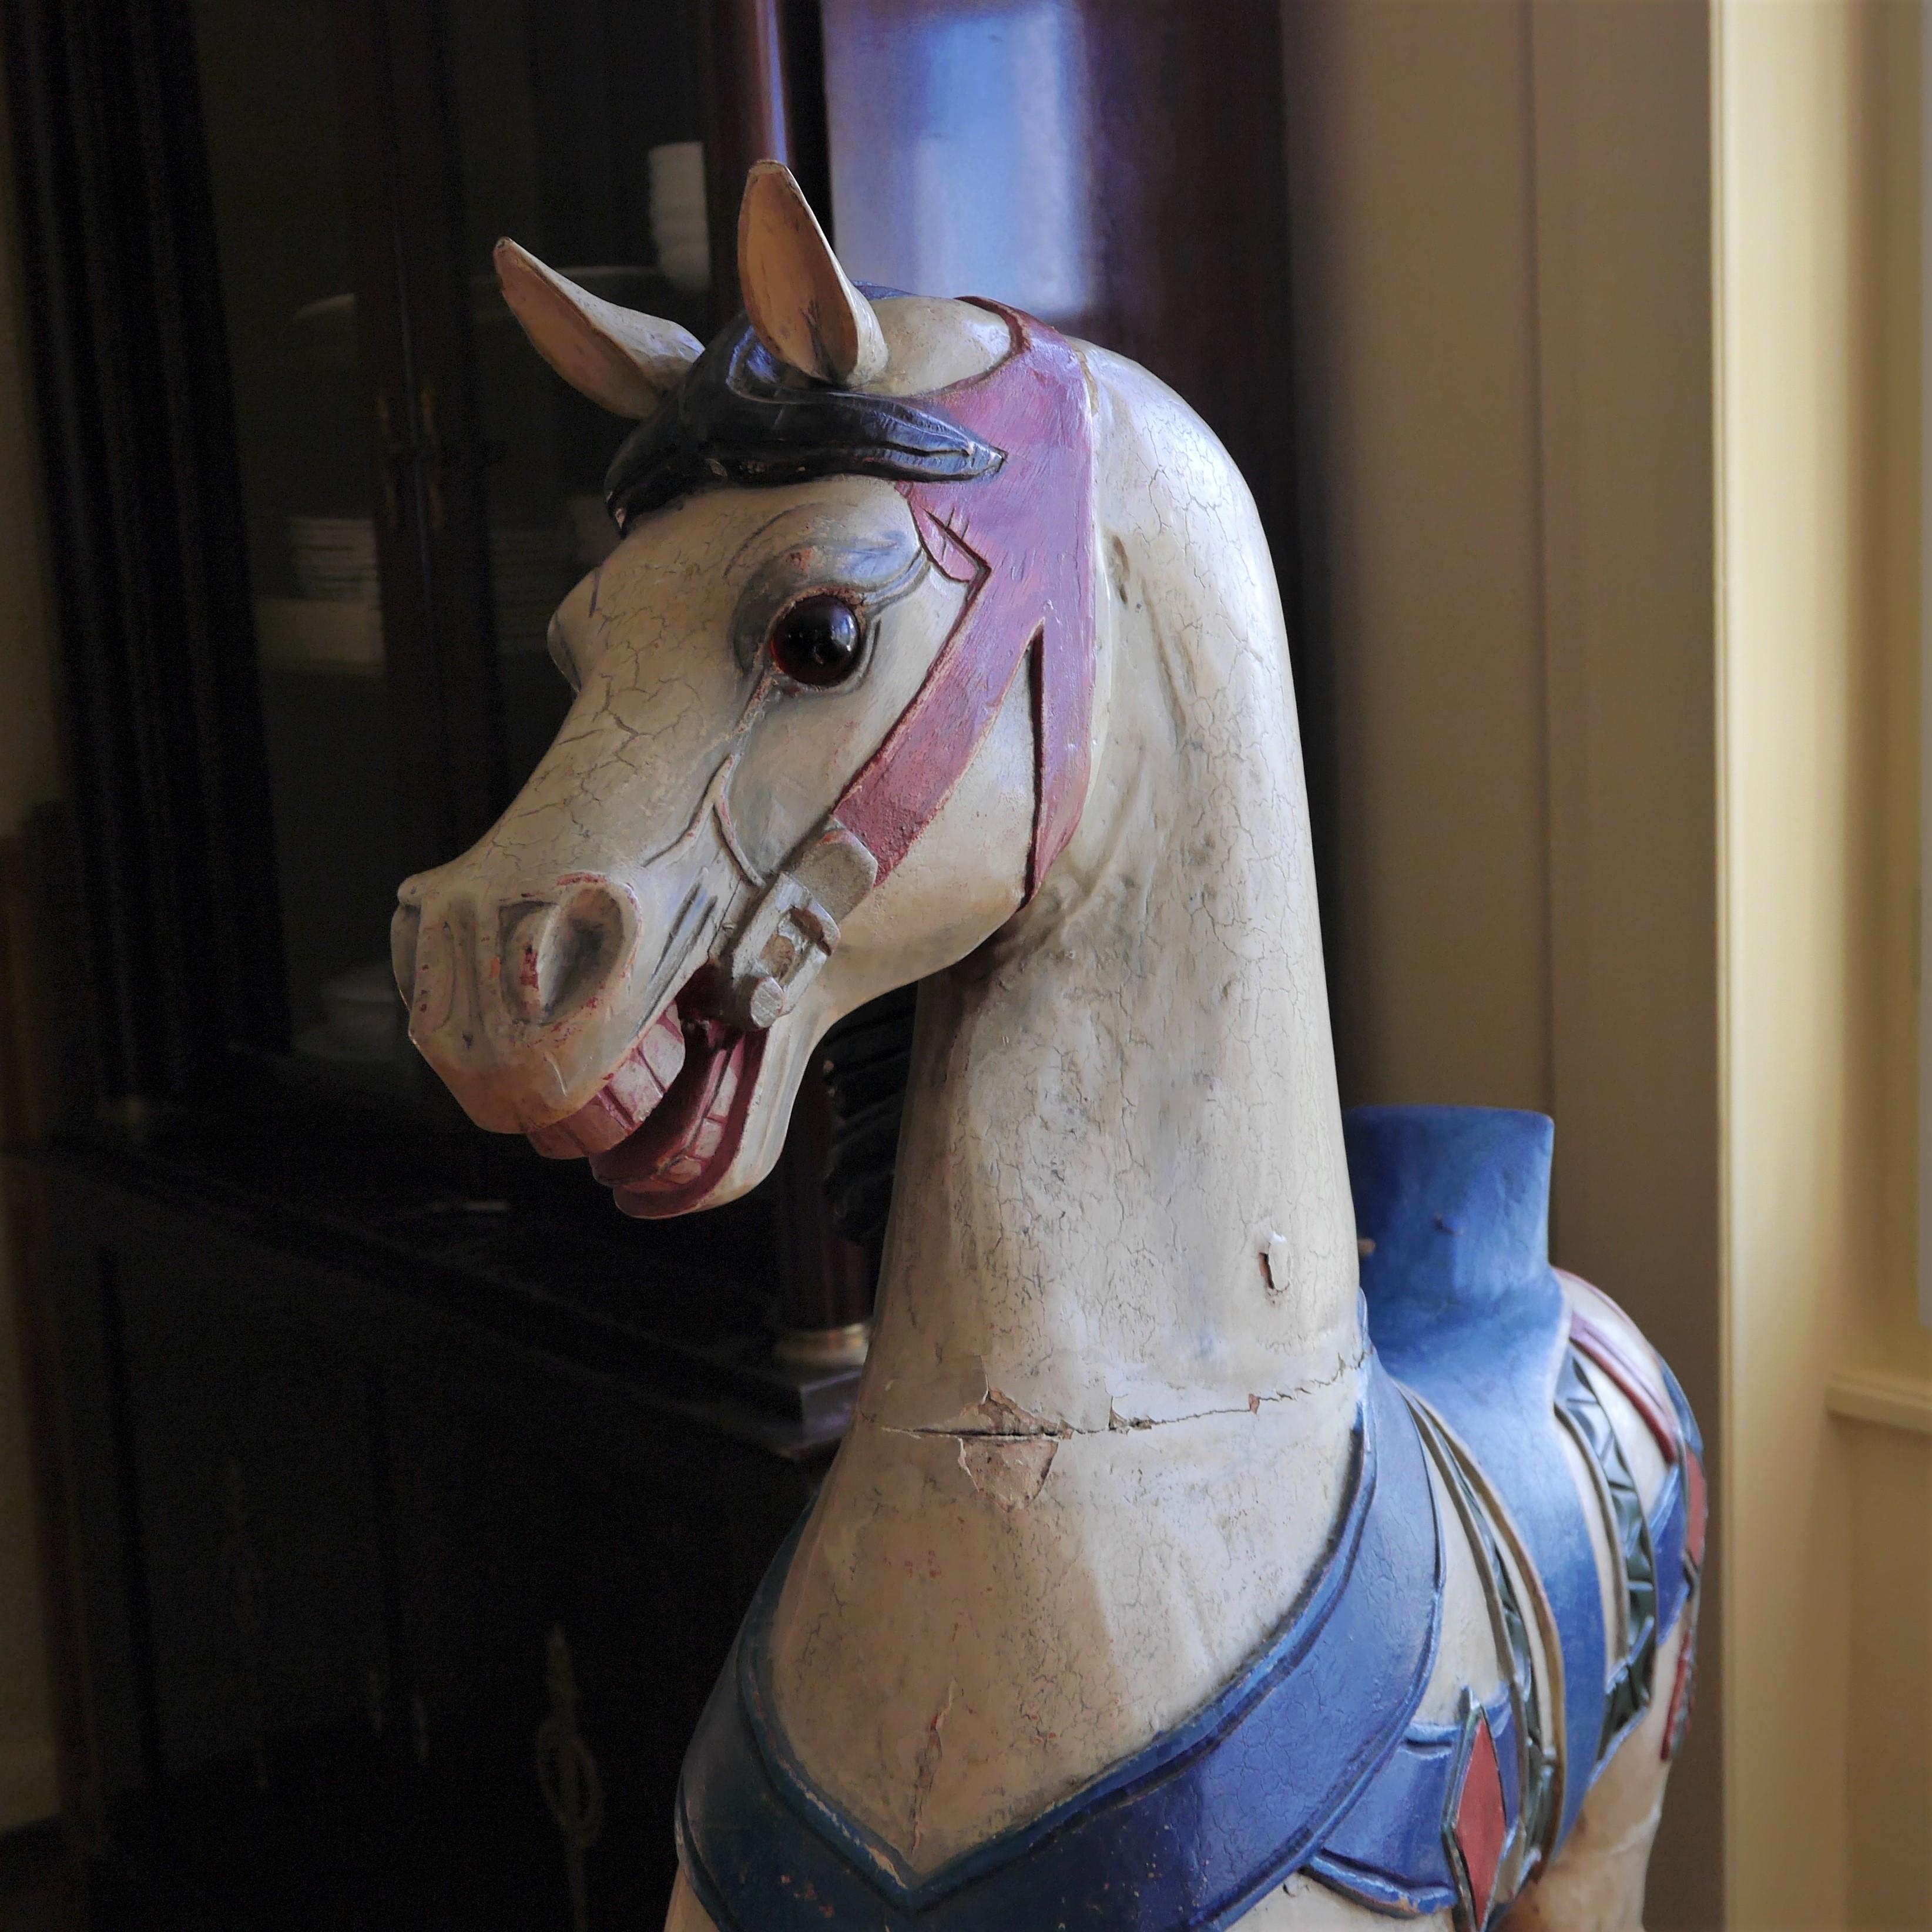 Cheval de carrousel en bois sculpté et peint en polychromie.
Queue en crin de cheval.
Support métallique.
Style Art déco, vers les années 1920.
Très bon état général, quelques éclats.